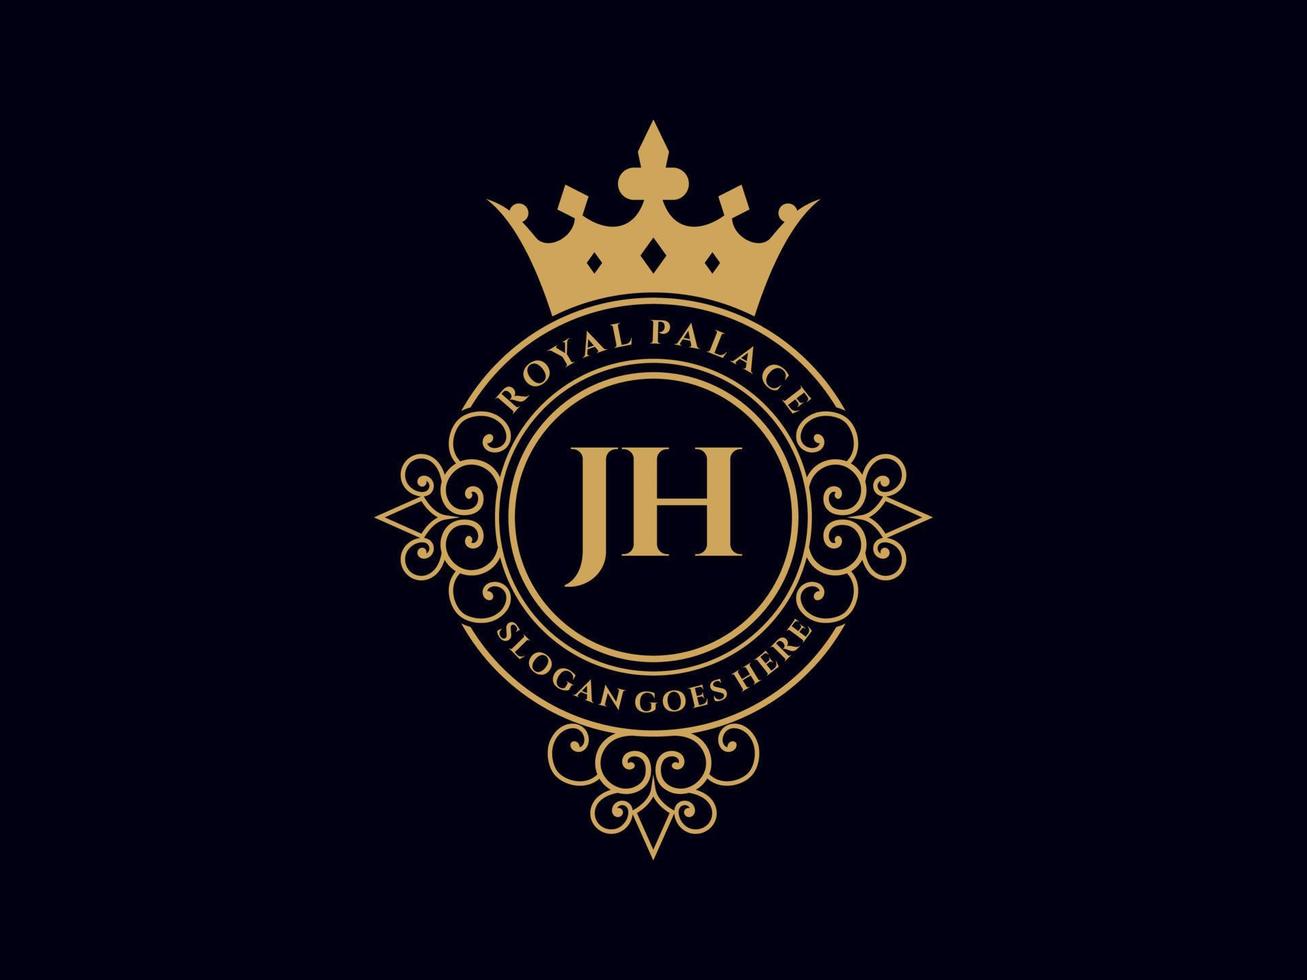 lettre jh logo victorien de luxe royal antique avec cadre ornemental. vecteur